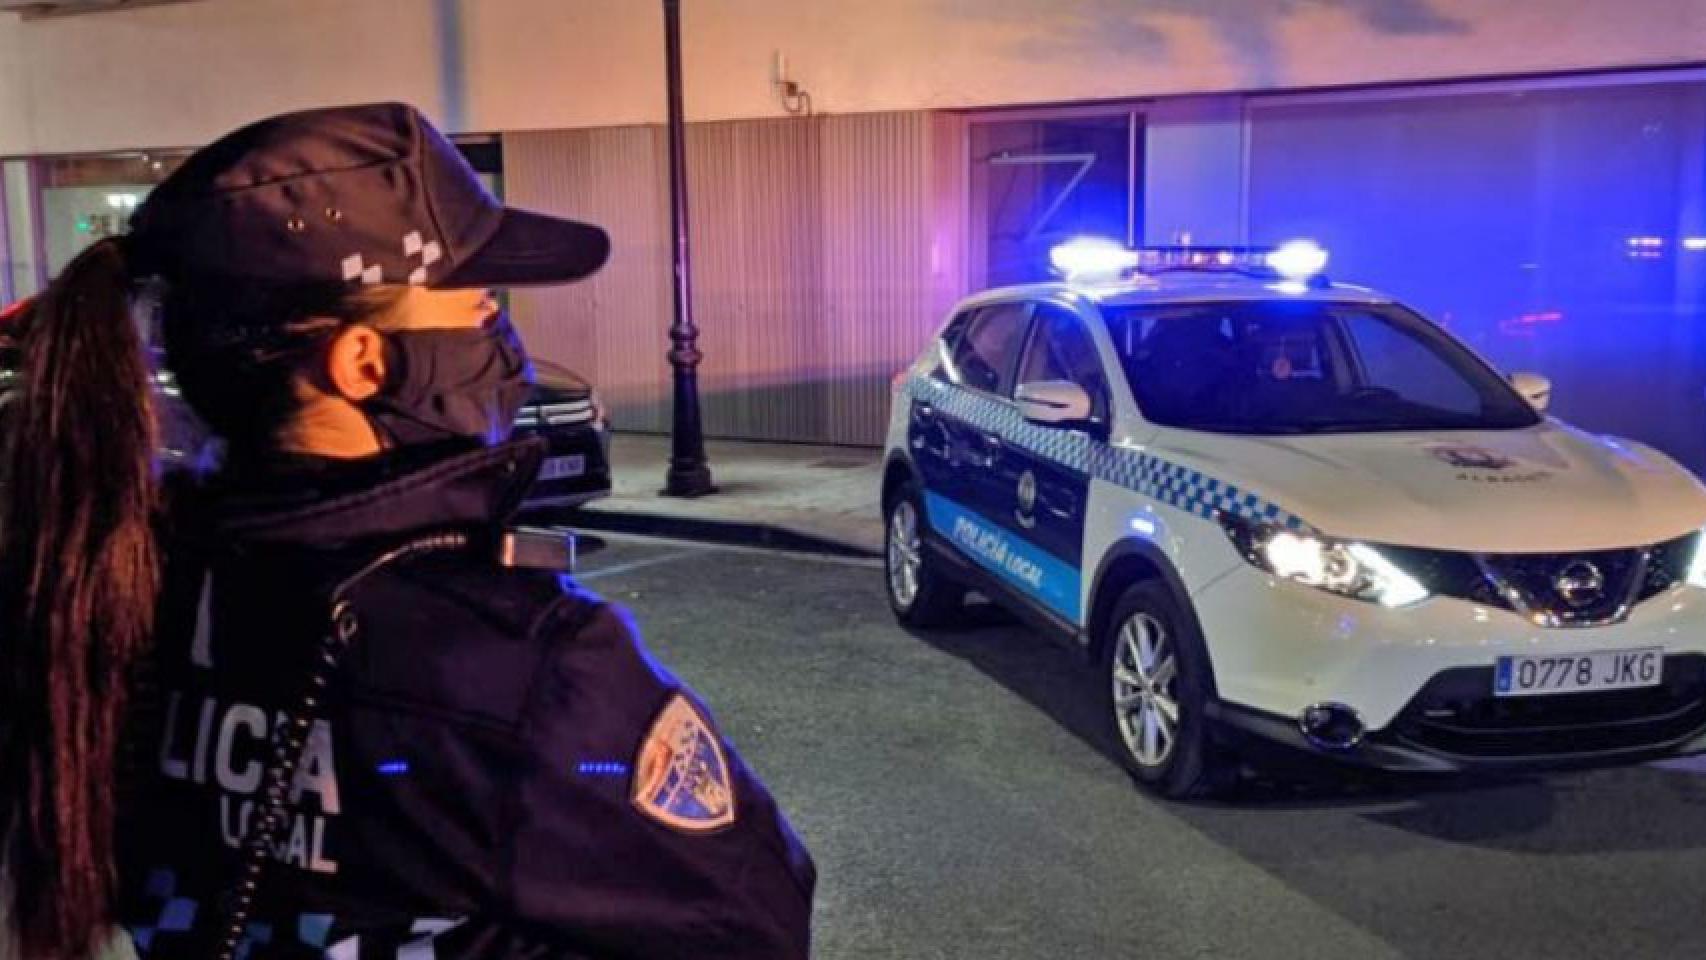 Una agente de la Policía Local de Albacete junto a un coche patrulla.